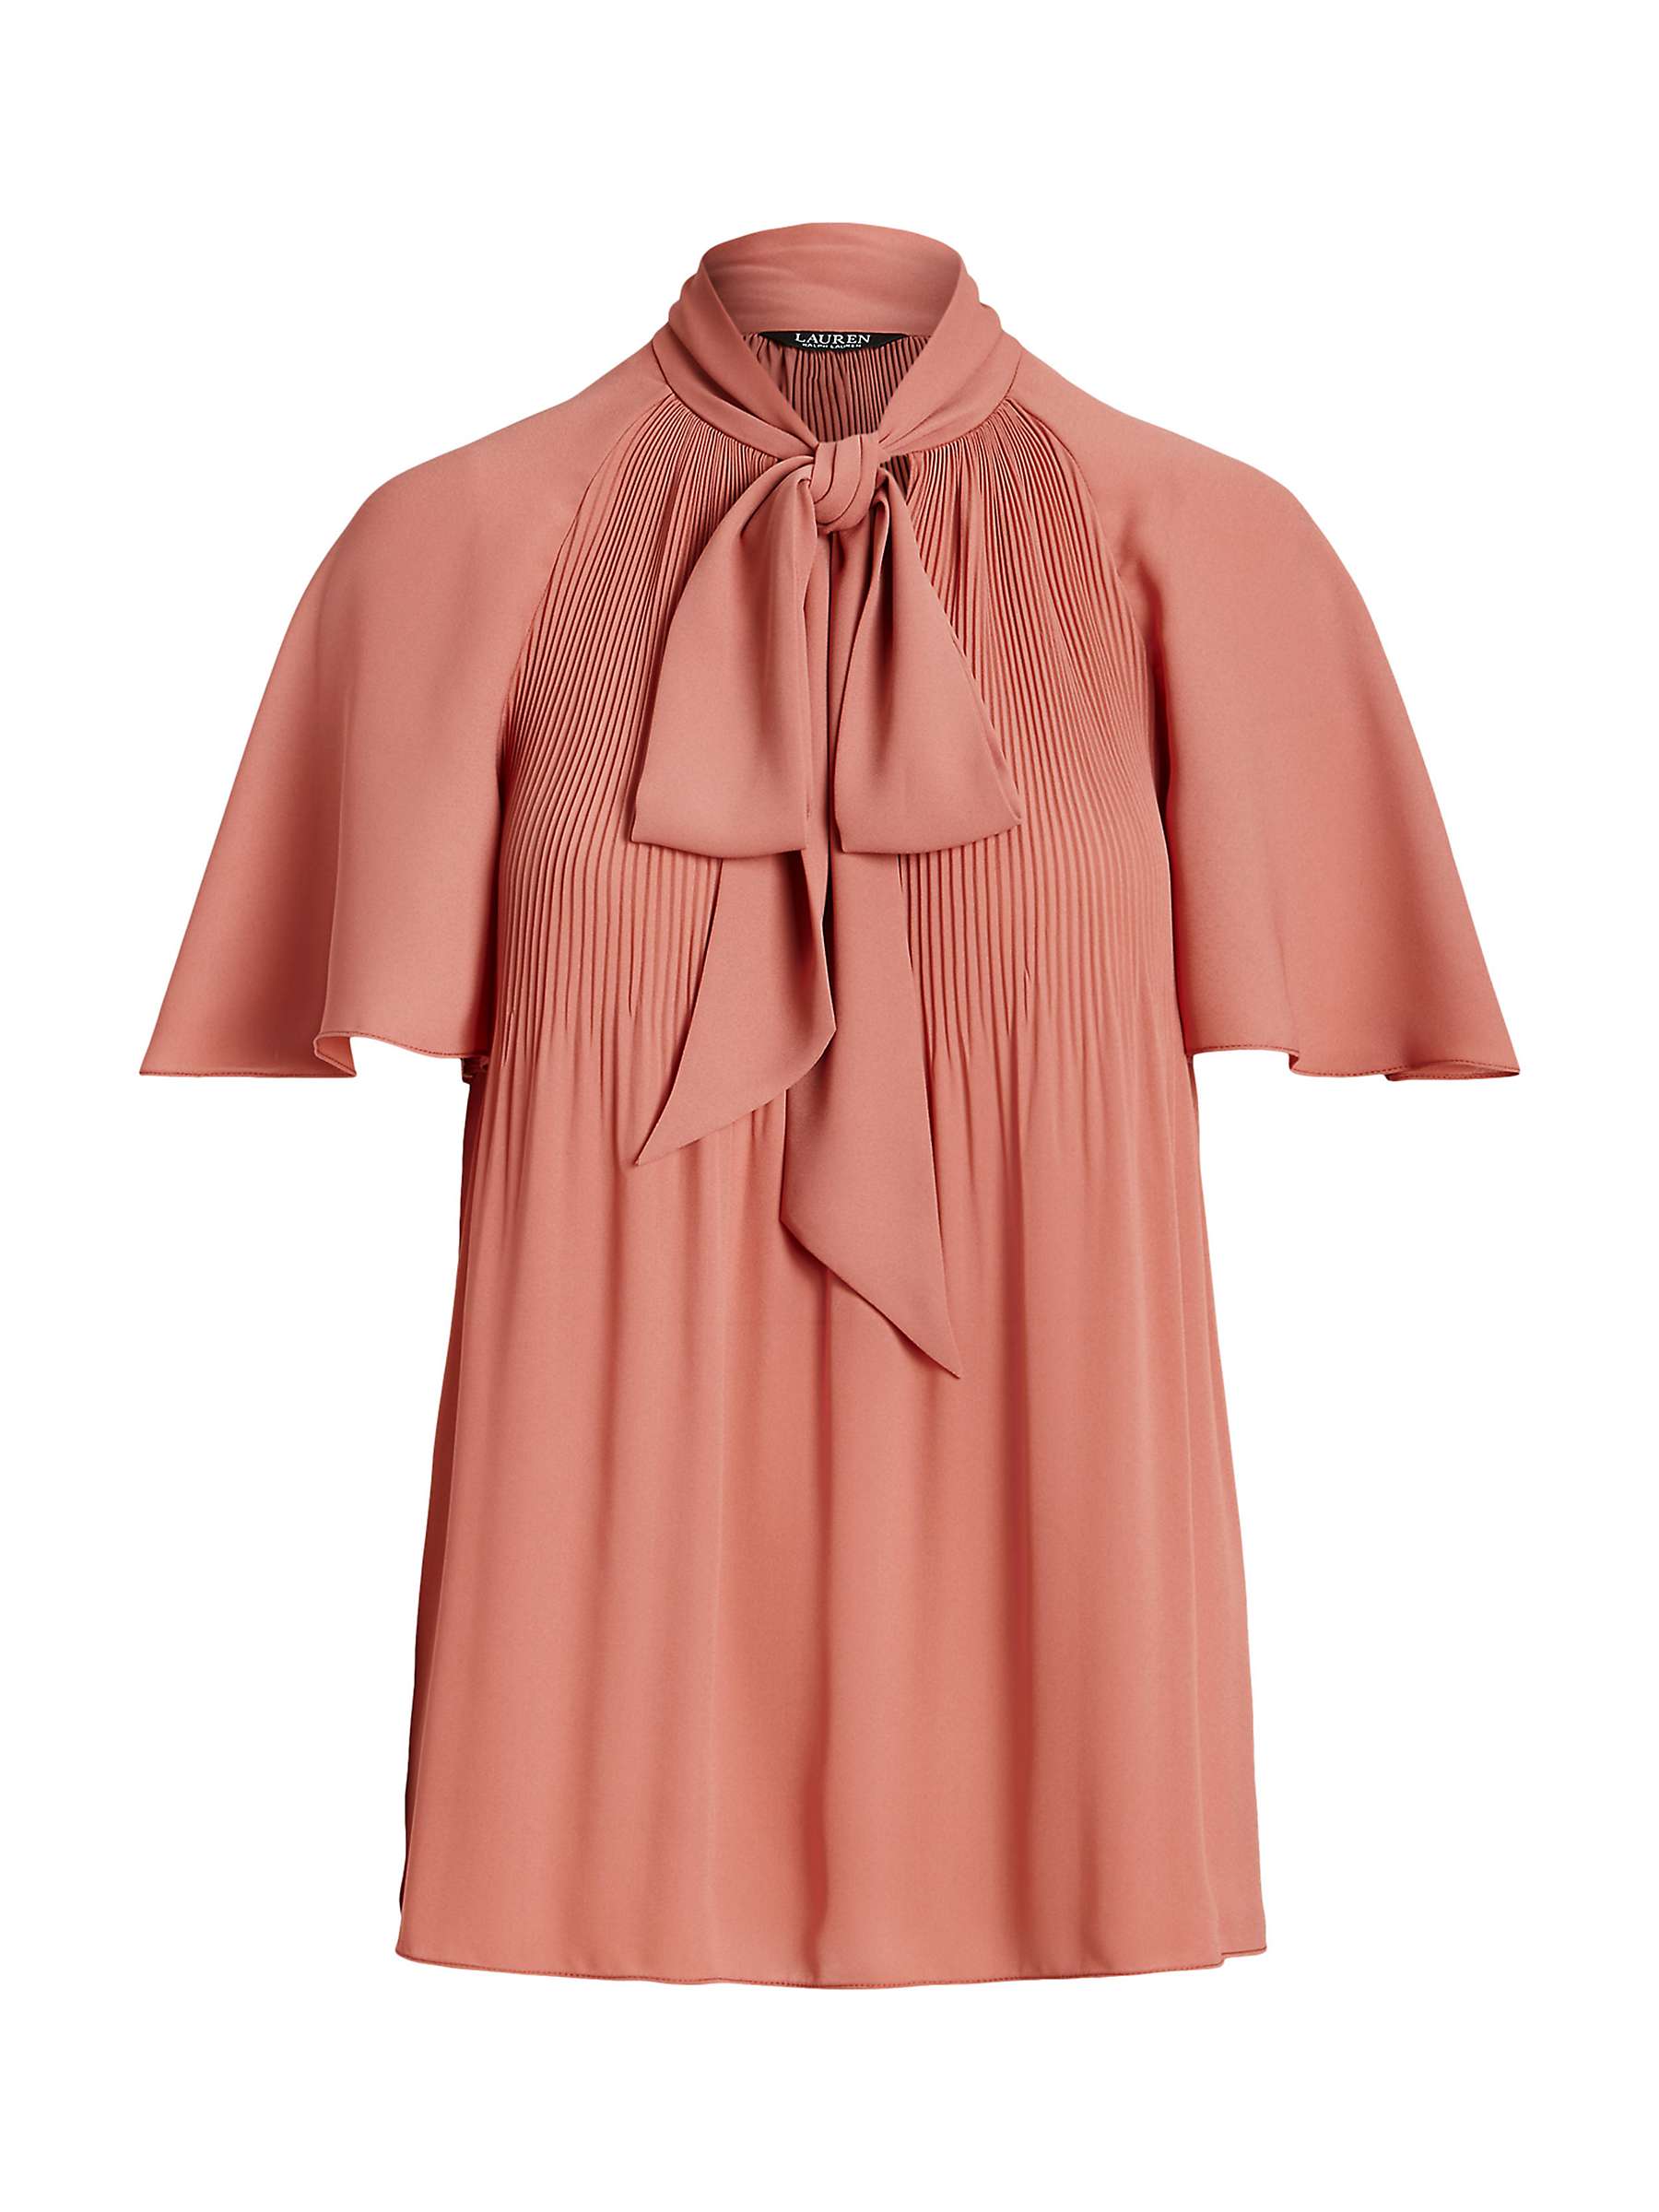 Buy Lauren Ralph Lauren Farhina Pleated Georgette Tie Neck Blouse, Pink Online at johnlewis.com